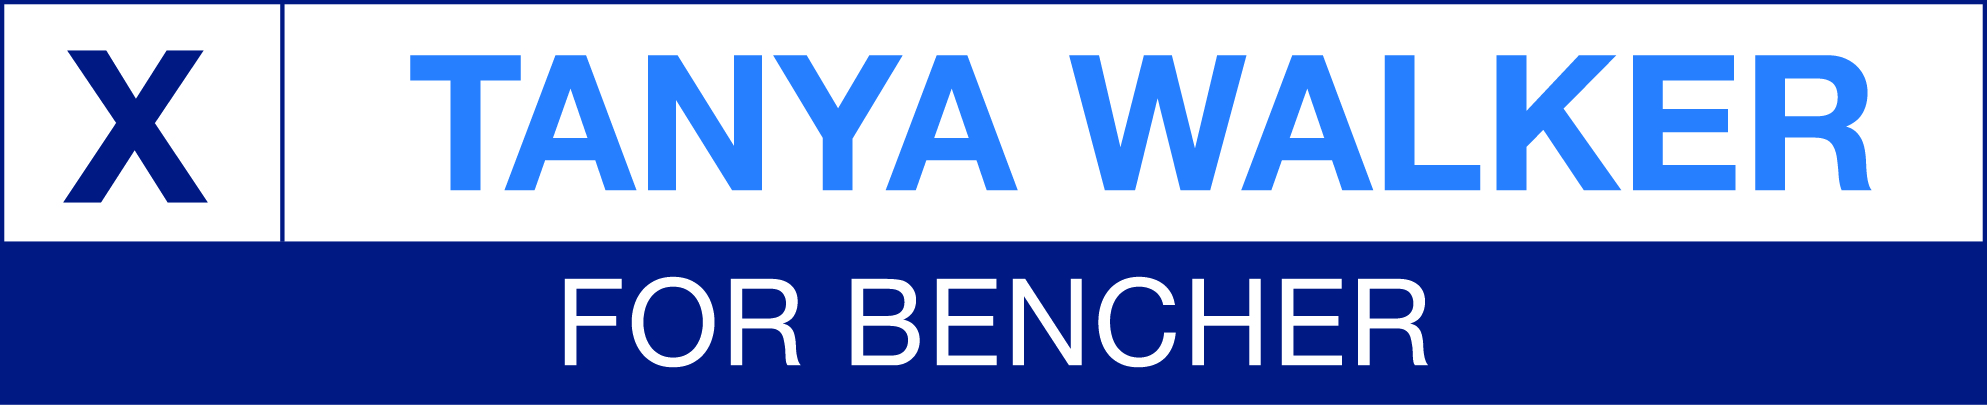 Tanya Walker for bencher